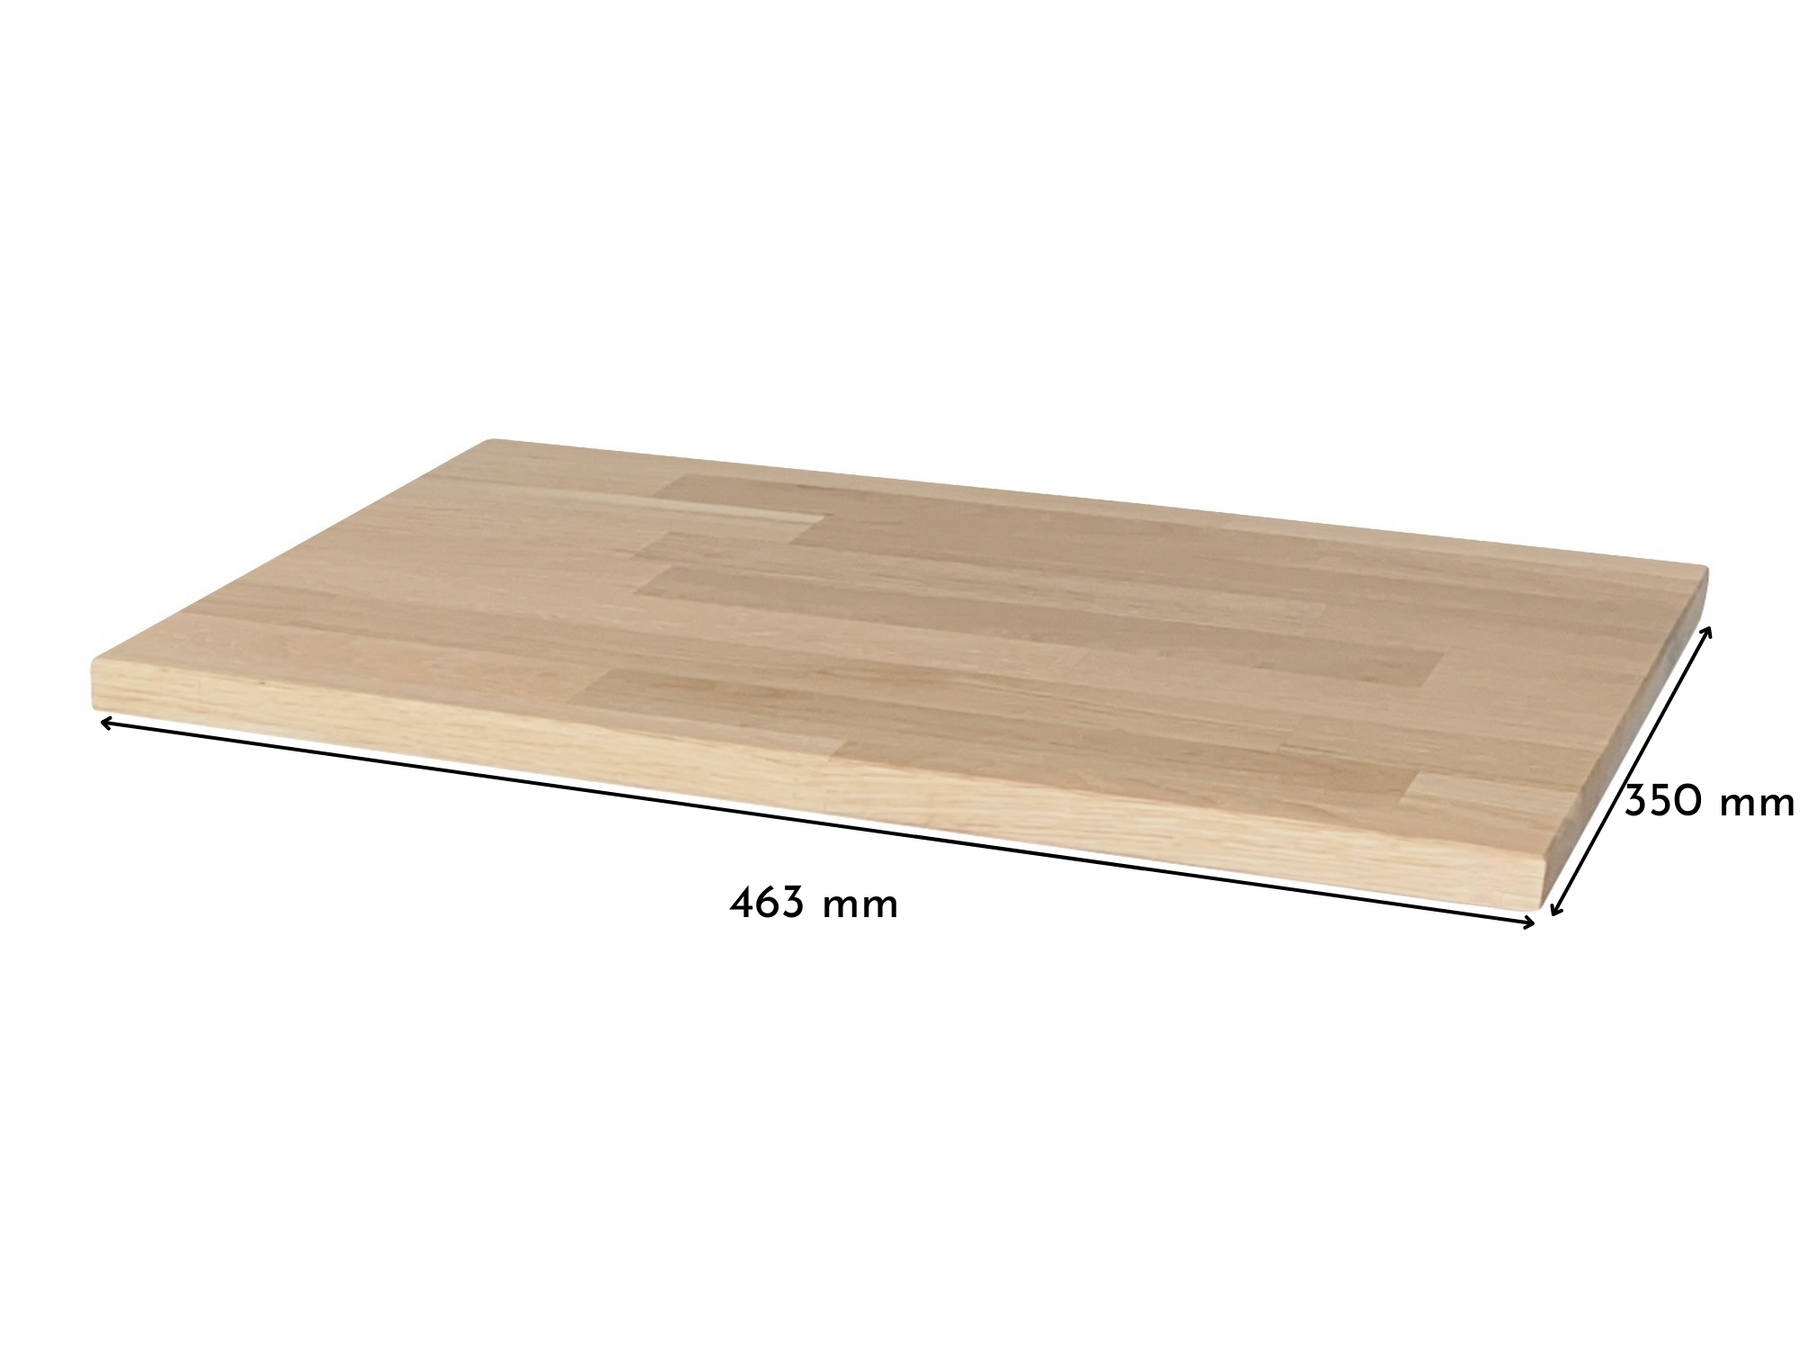 Holzplatte für Ikea Hemnes Ablagetisch Eiche Weiß geölt